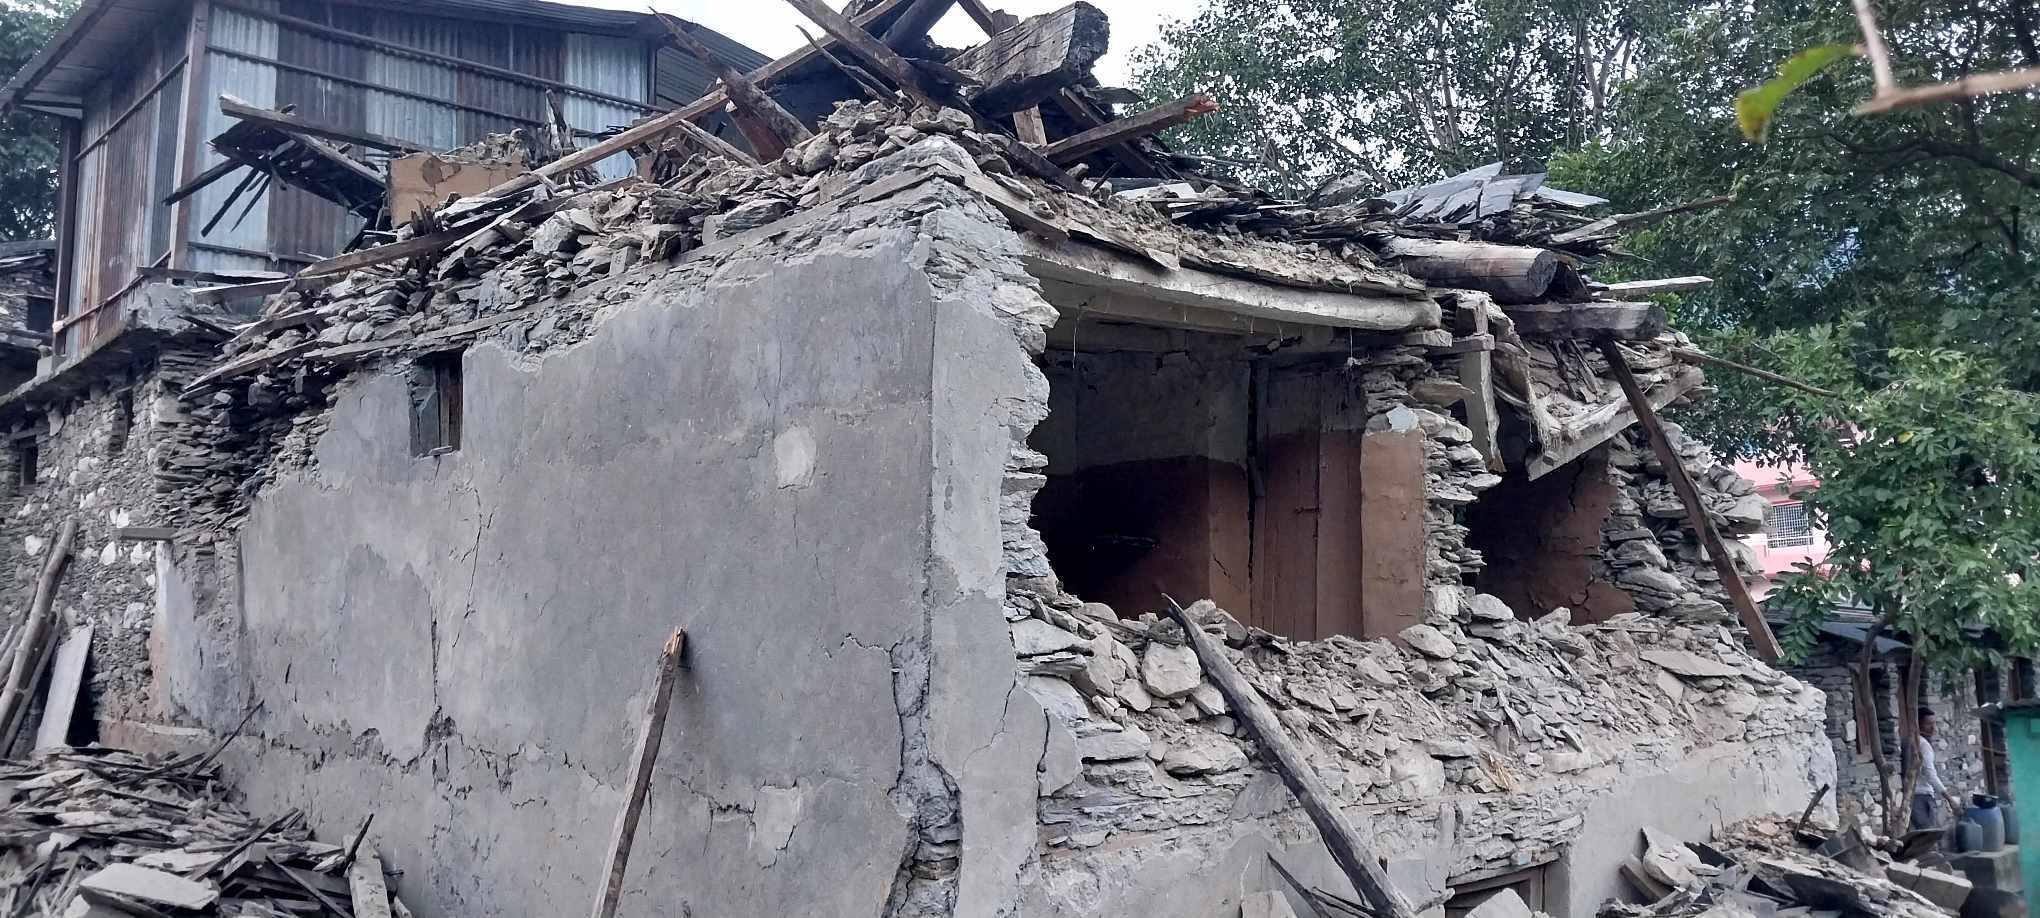 मध्यरातमा भूकम्प- डेढ सय भन्दा बढिकाे मृत्यु, जाजरकोट, रुकुम पश्चिममा व्यापक क्षती